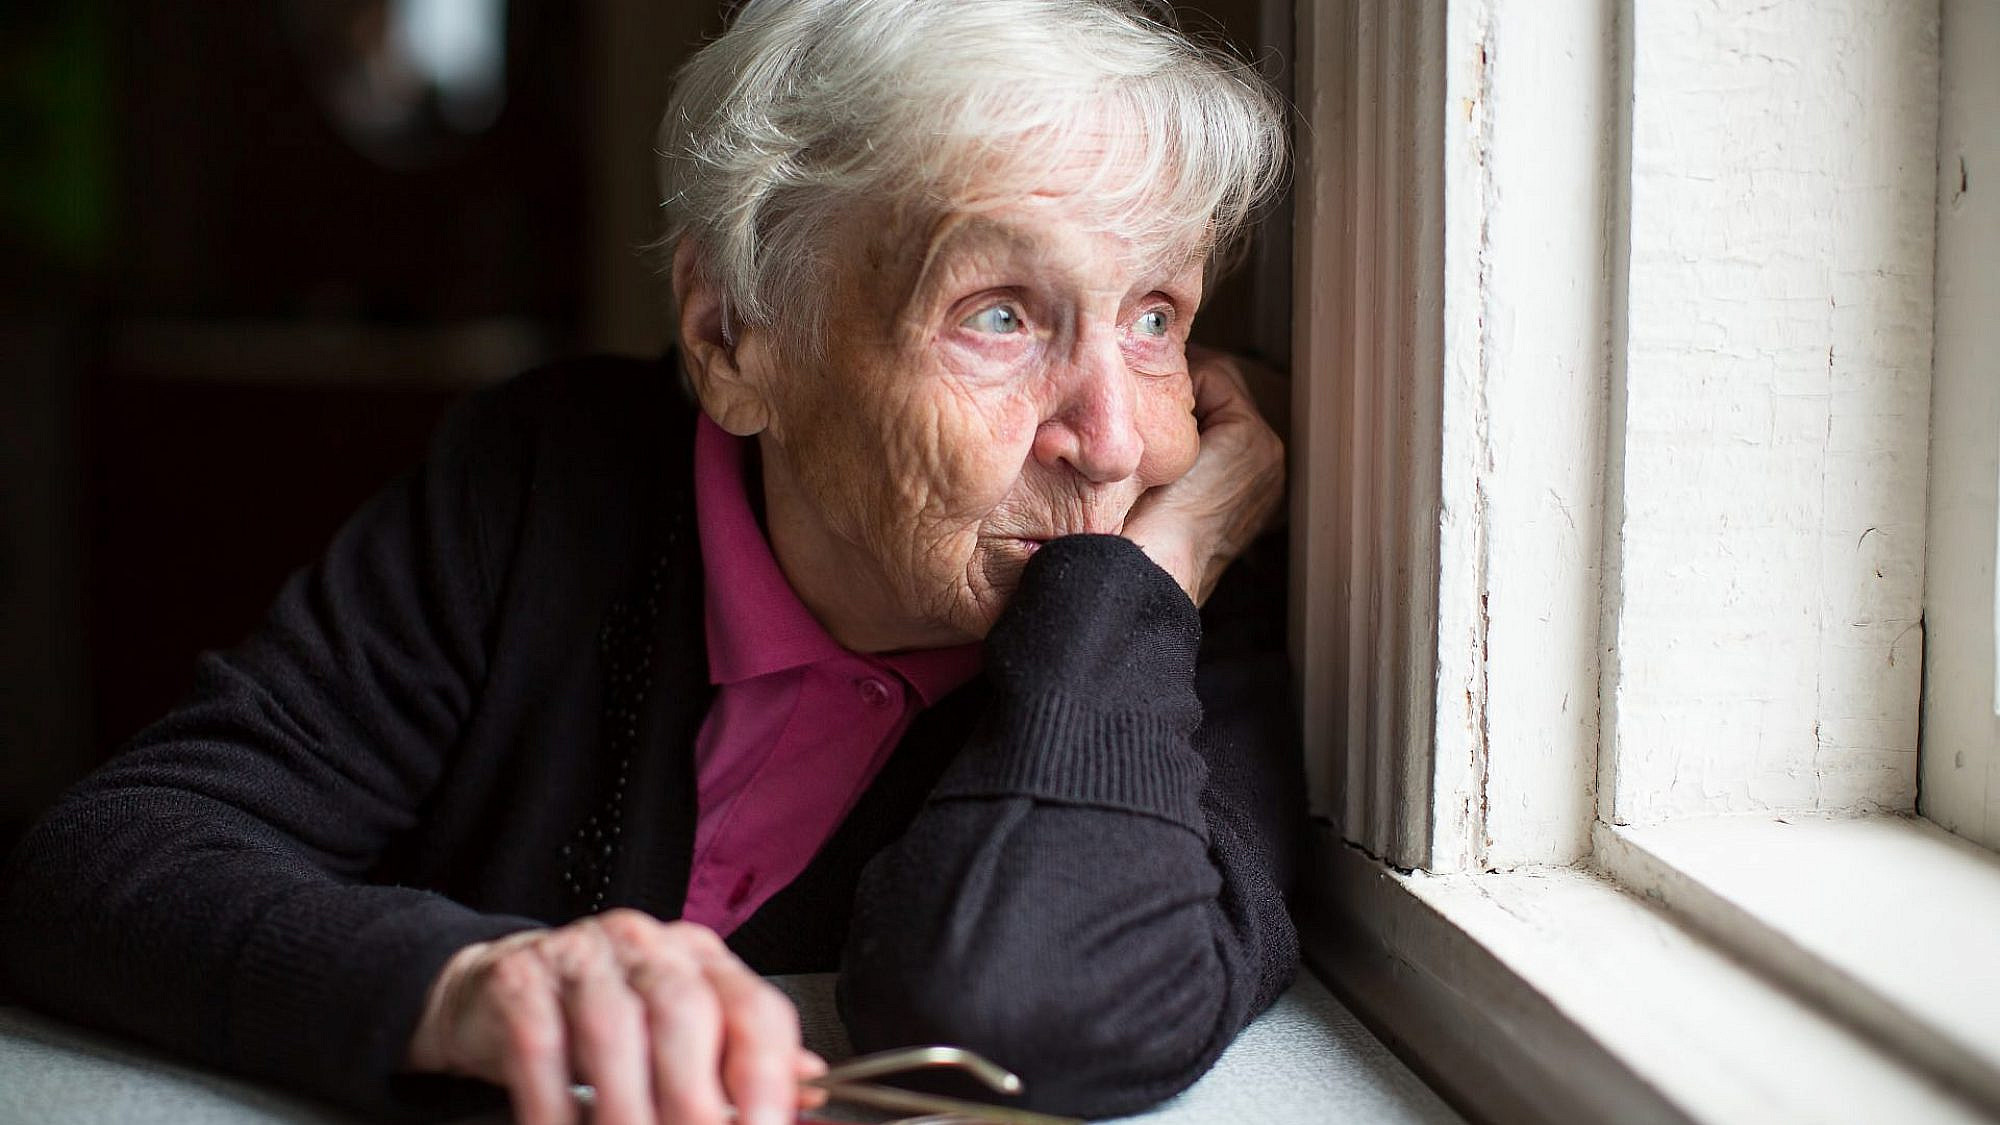 בסך הכל להתקשר ולשאול ״מה נשמע?״ פעם בשבוע. אימוץ קשישים | צילום: shutterstock